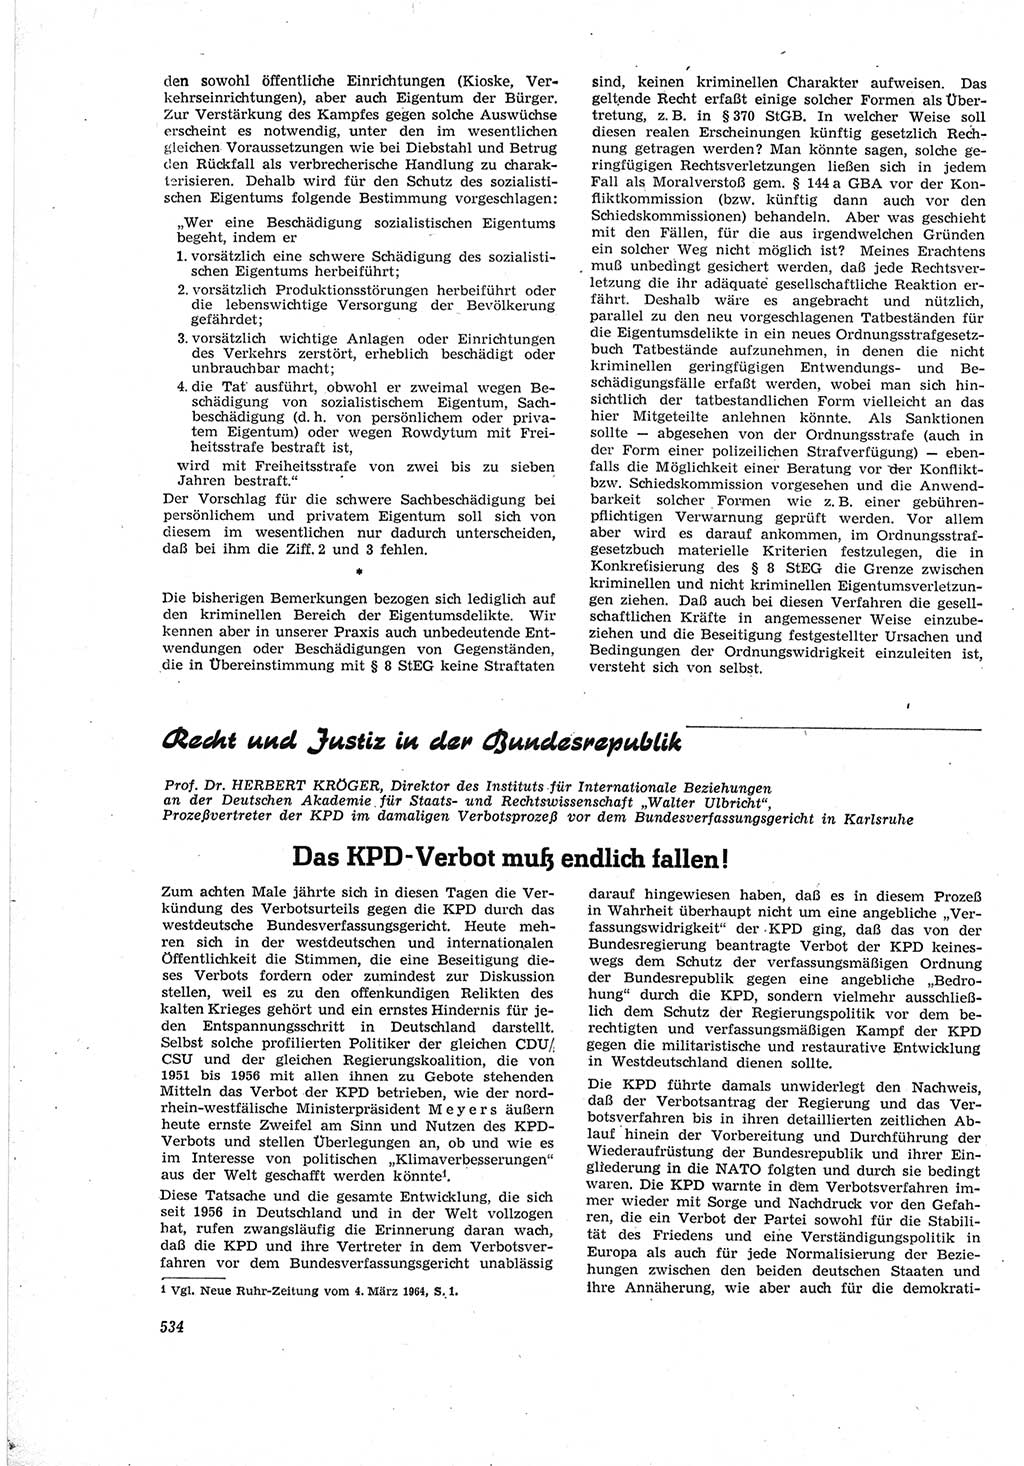 Neue Justiz (NJ), Zeitschrift für Recht und Rechtswissenschaft [Deutsche Demokratische Republik (DDR)], 18. Jahrgang 1964, Seite 534 (NJ DDR 1964, S. 534)